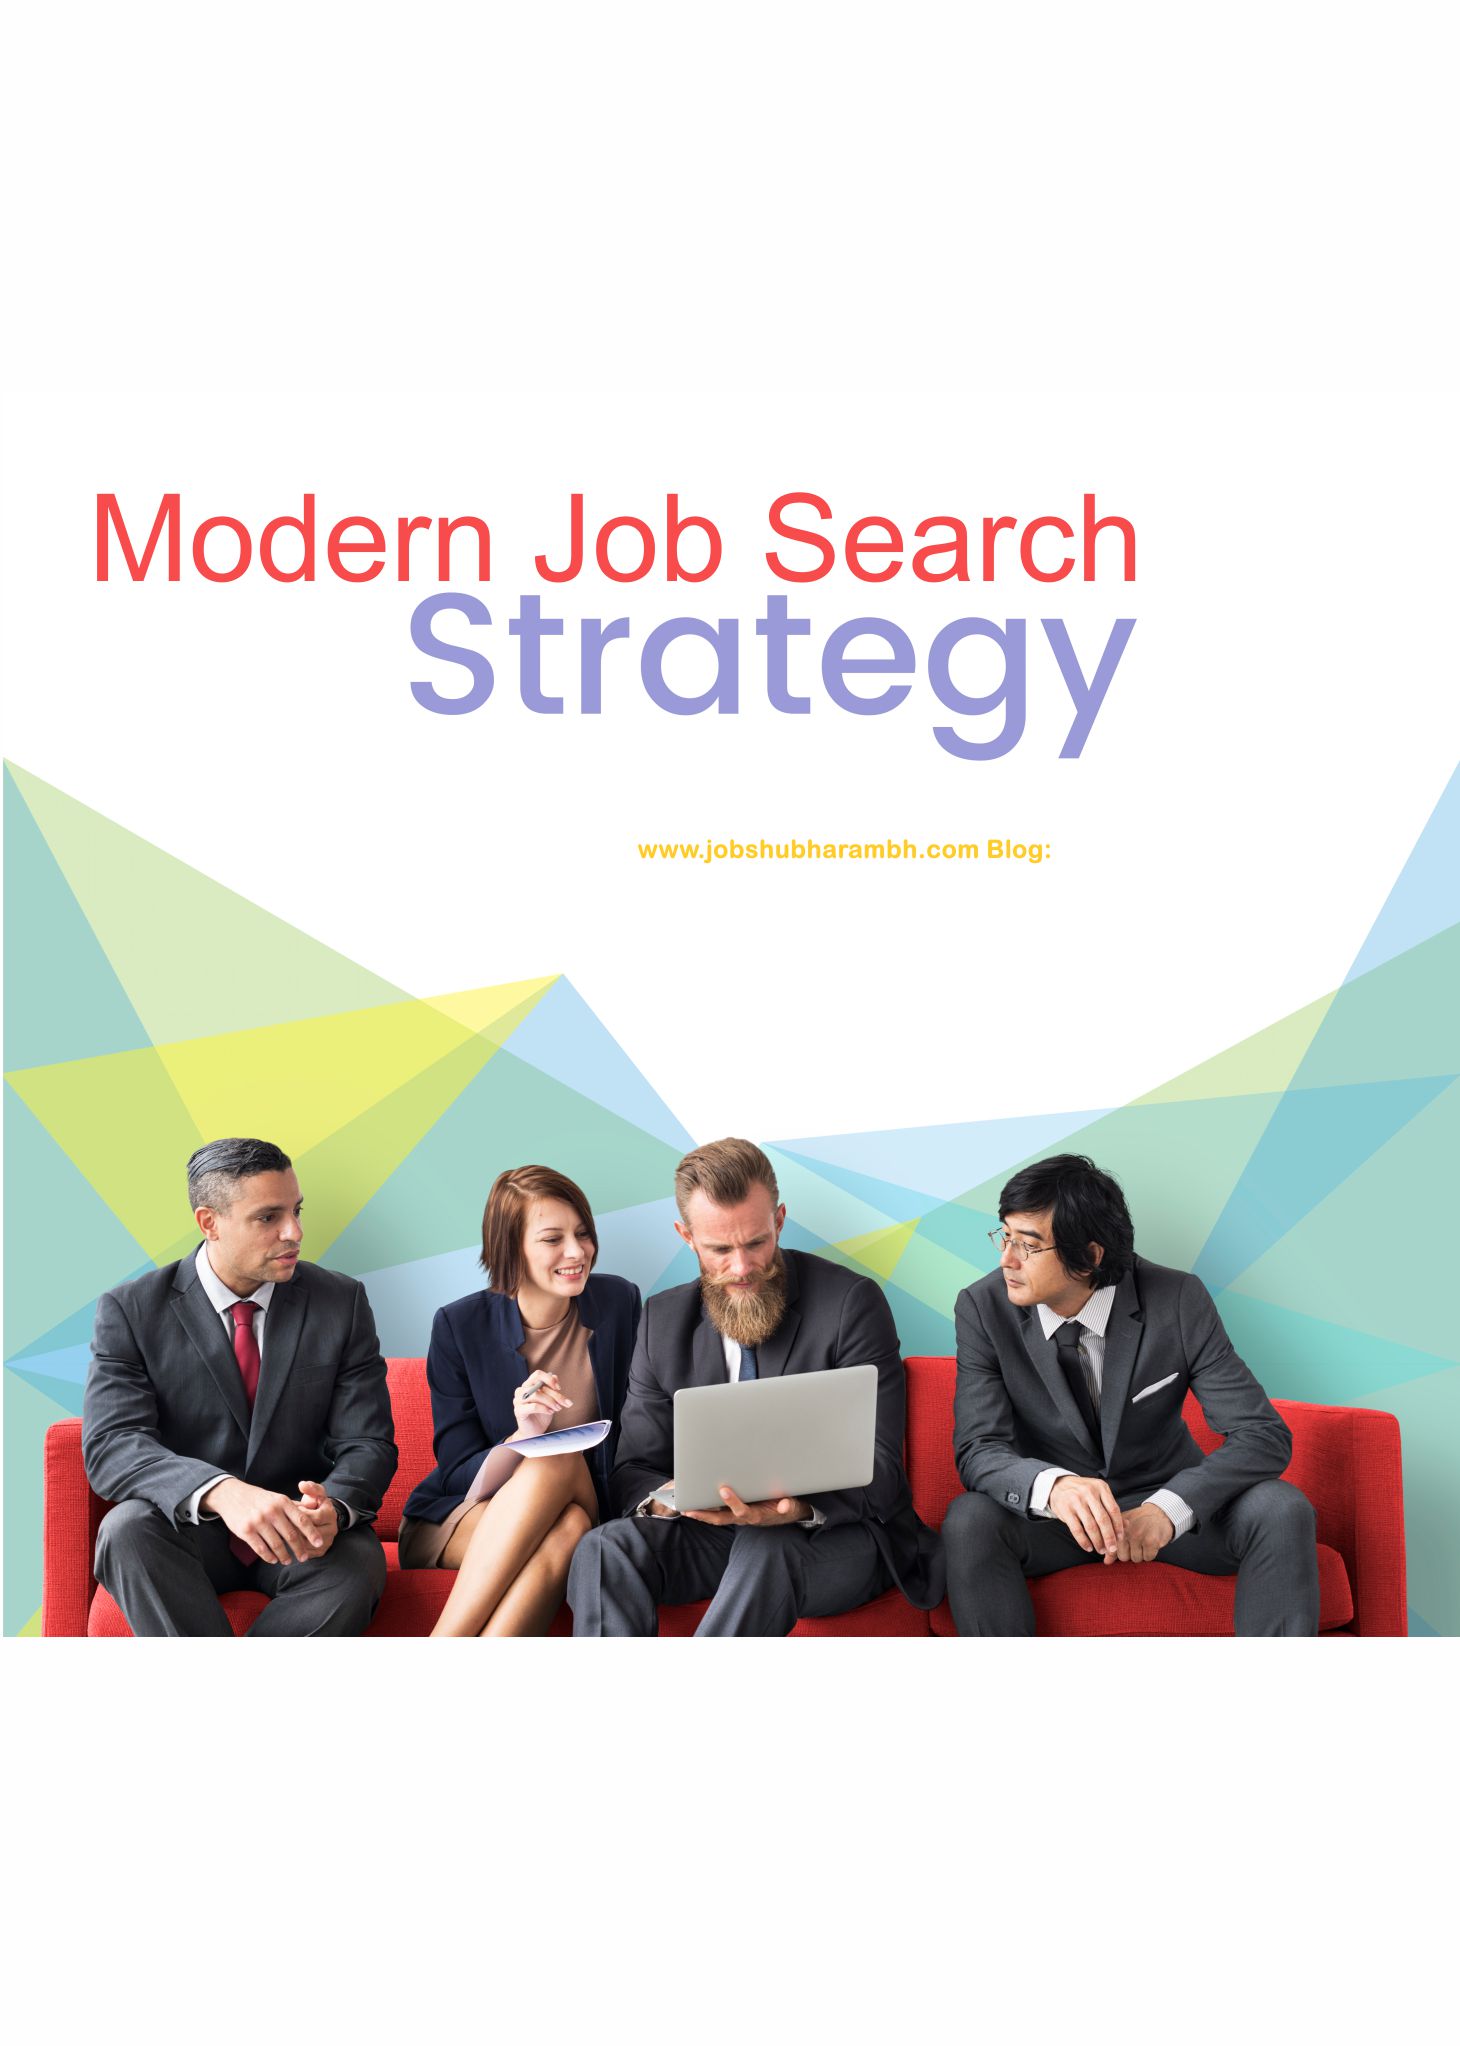 Modern Job Search Strategies